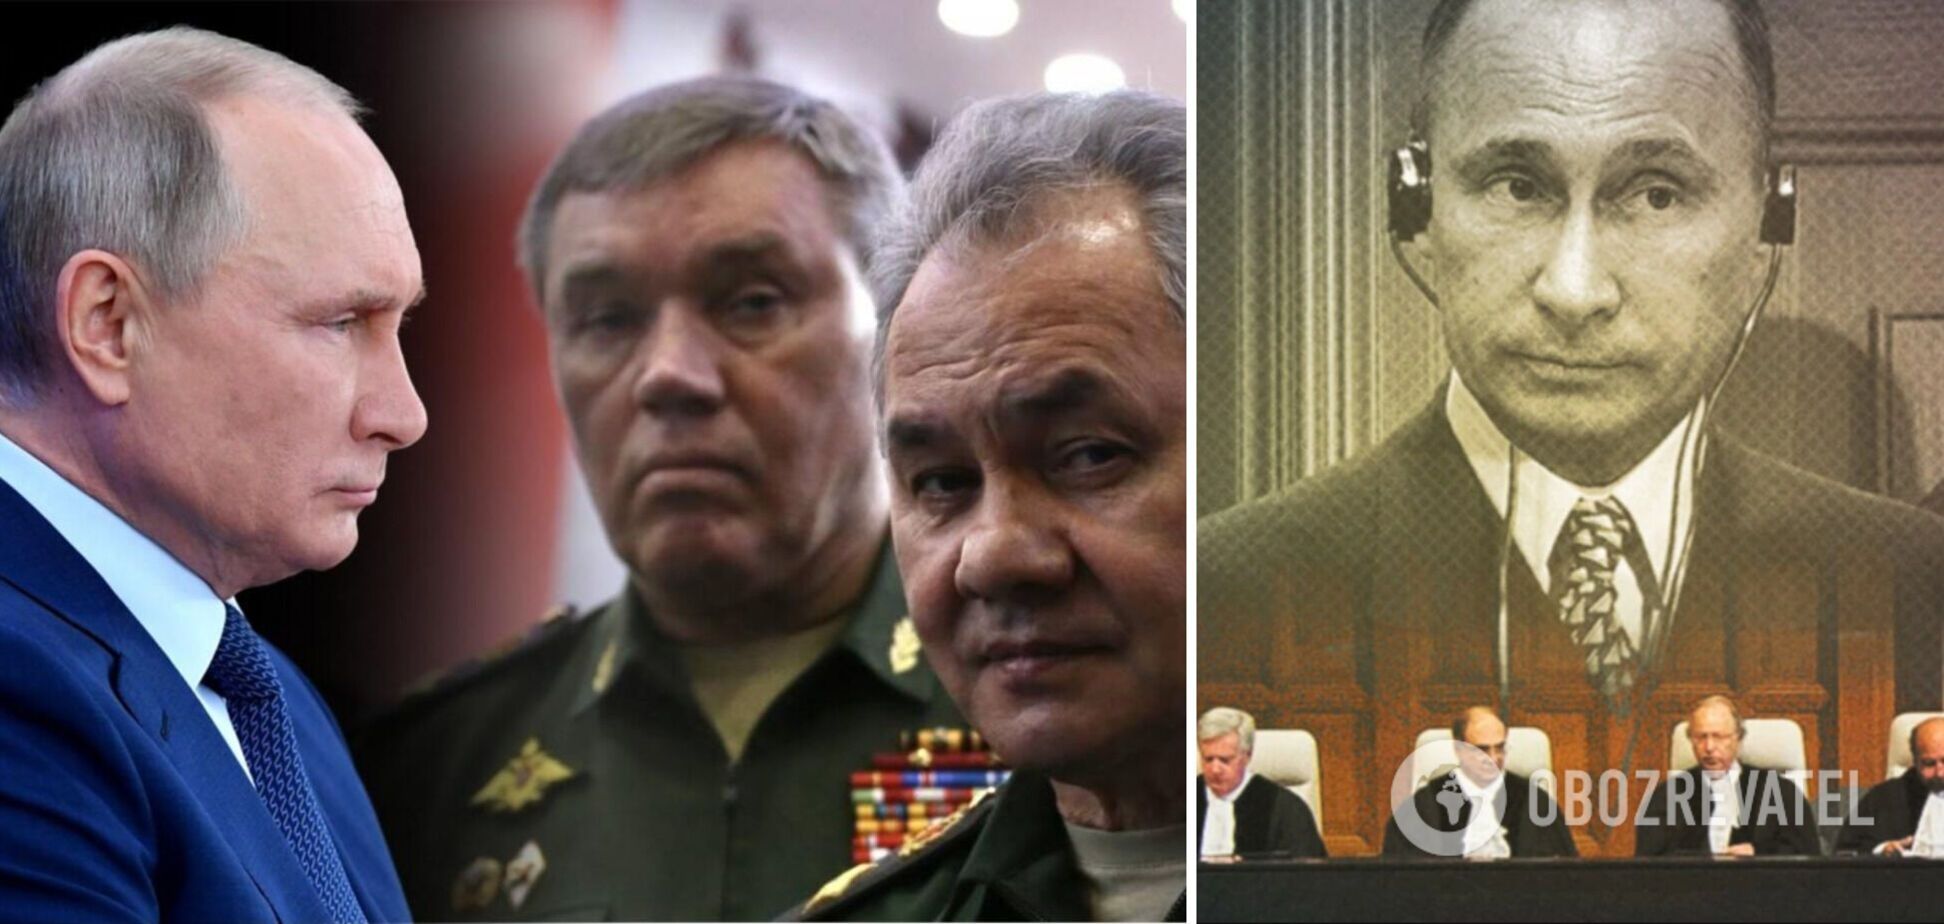 Зрозуміли, що чекає трибунал: Путін, Шойгу та Герасимов перестали підписувати злочинні накази